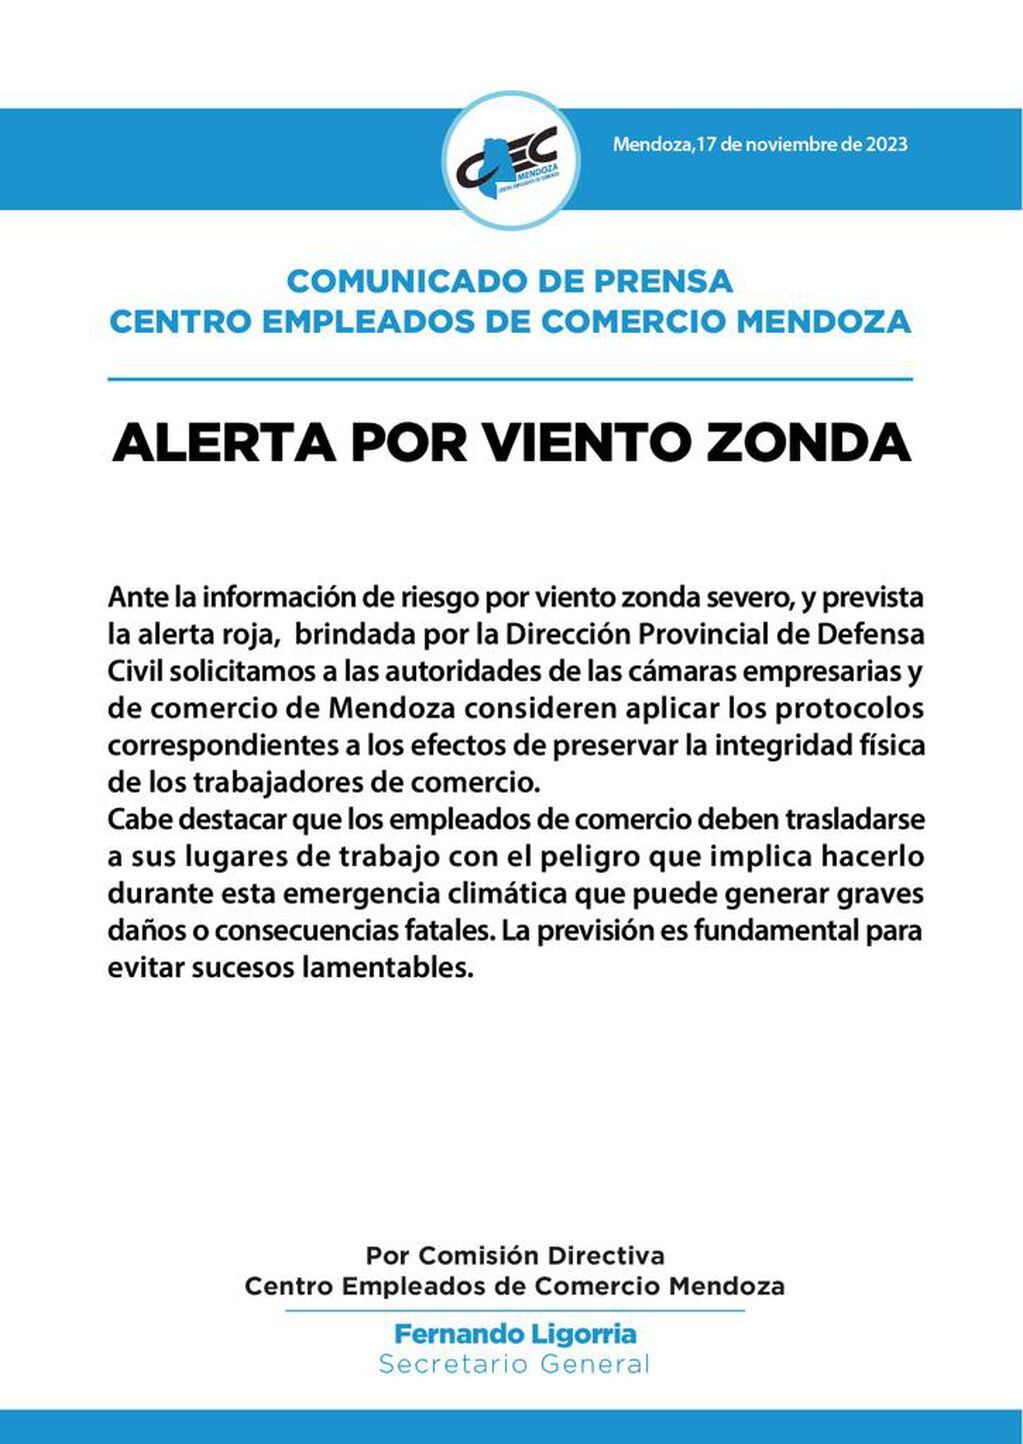 Comunicado del Centro Empleados de Comercio ante la situación de viento Zonda.